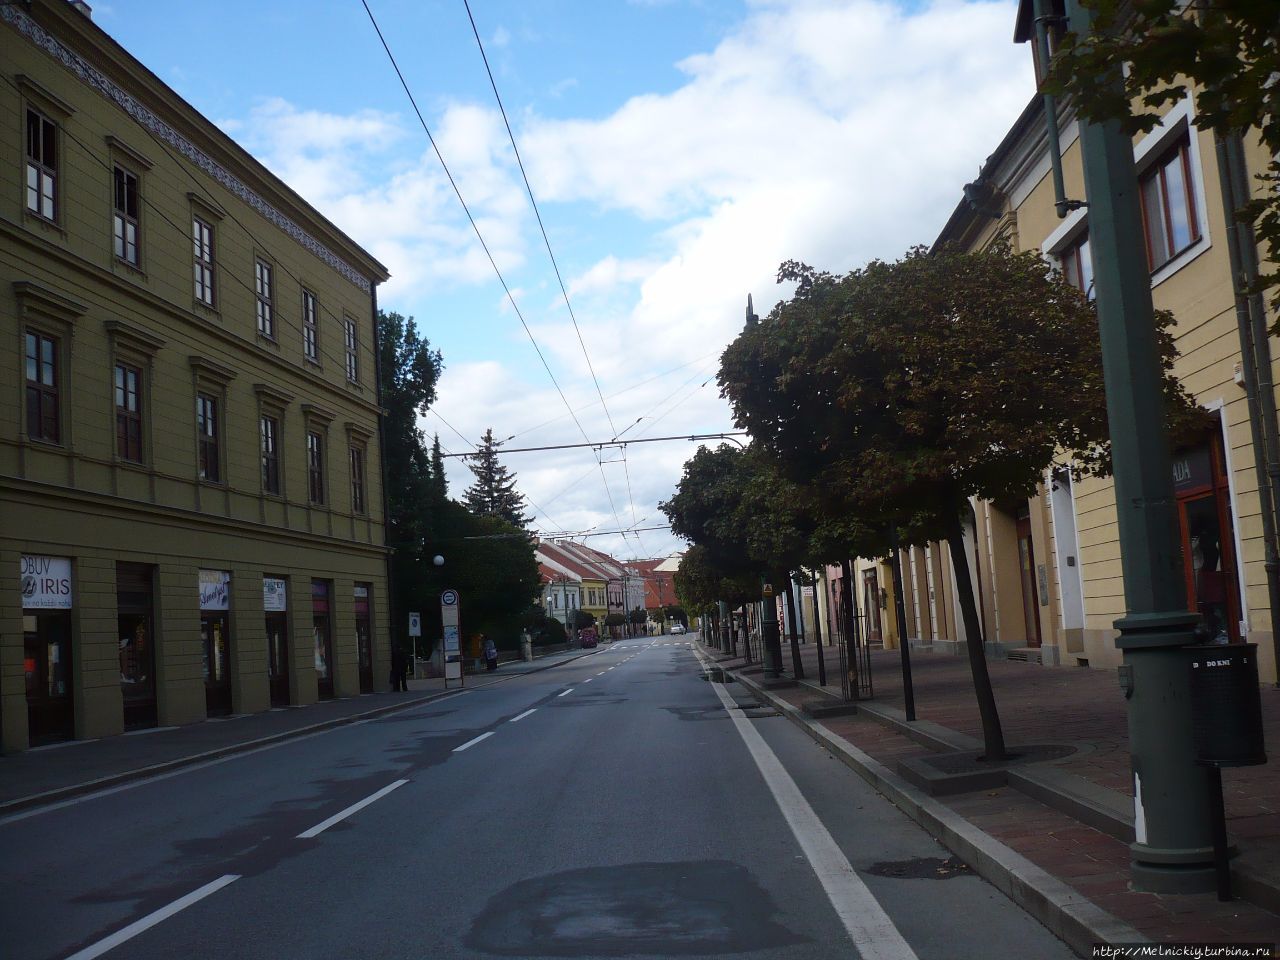 Короткая прогулка по центру старинного города Прешов, Словакия